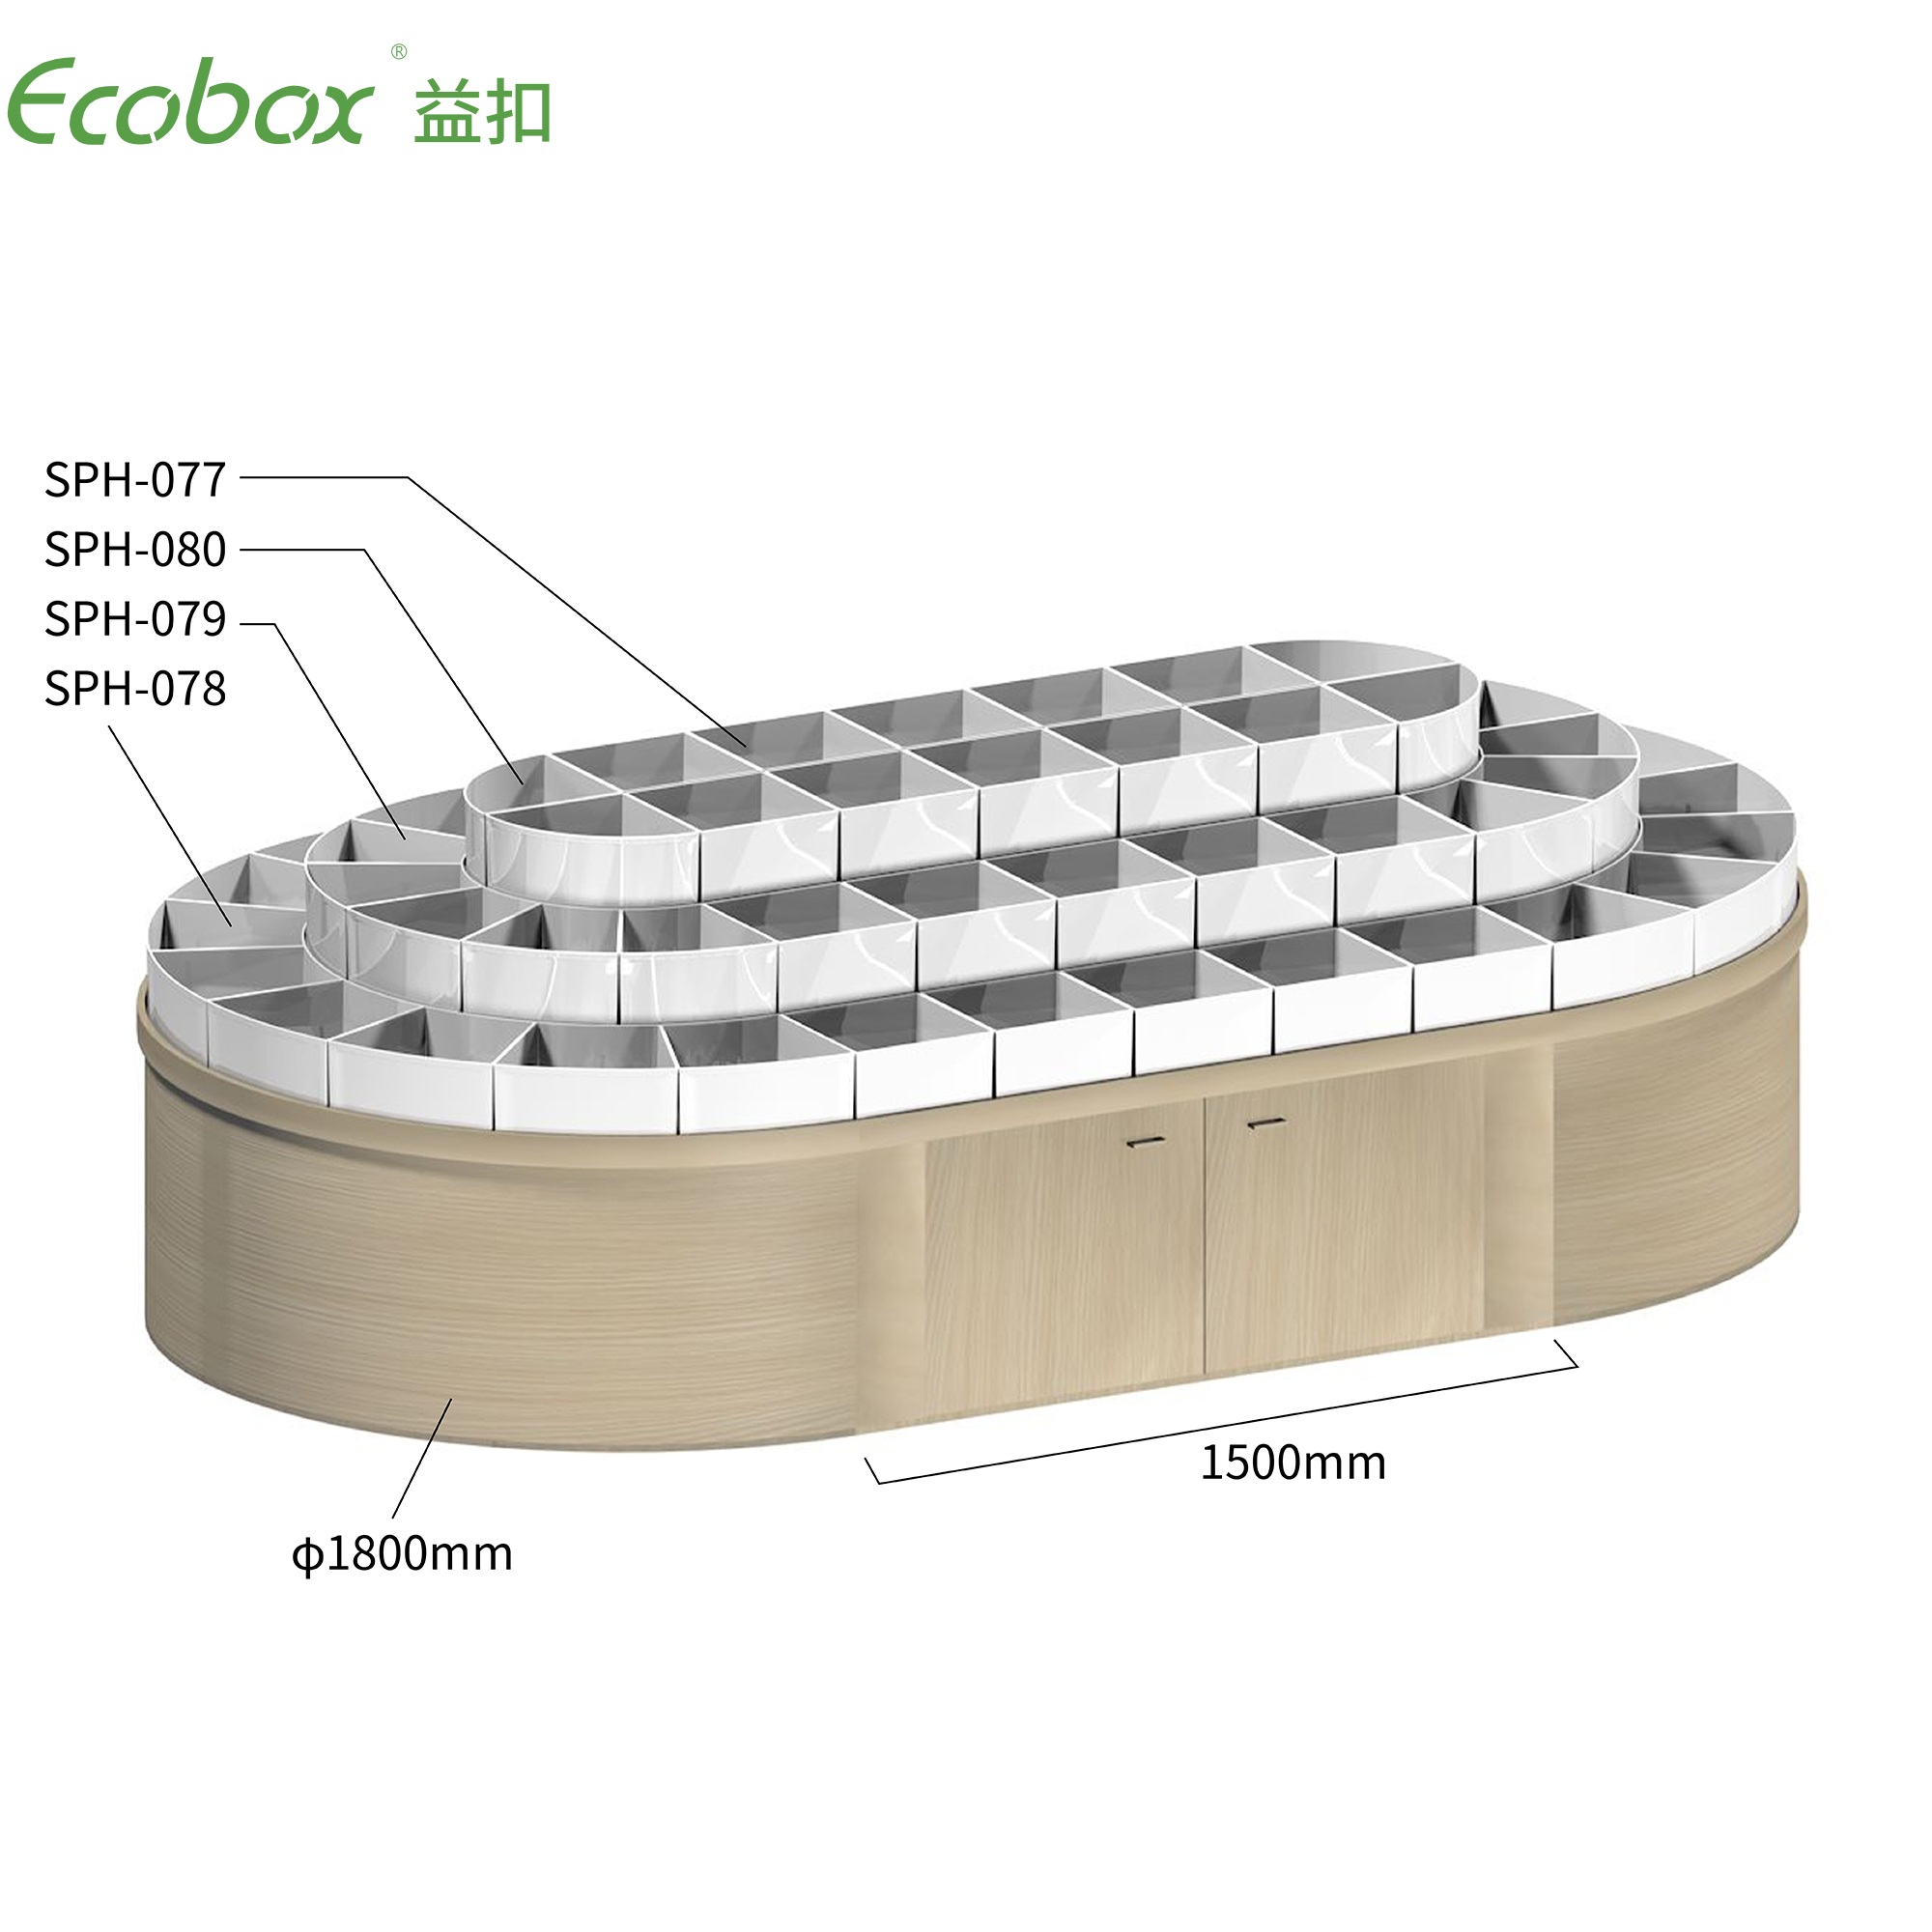 Ecobox G012 Supermarkt-Großwarendisplays, rundes Regal für Süßigkeiten, Nüsse und luftdichten Behälter